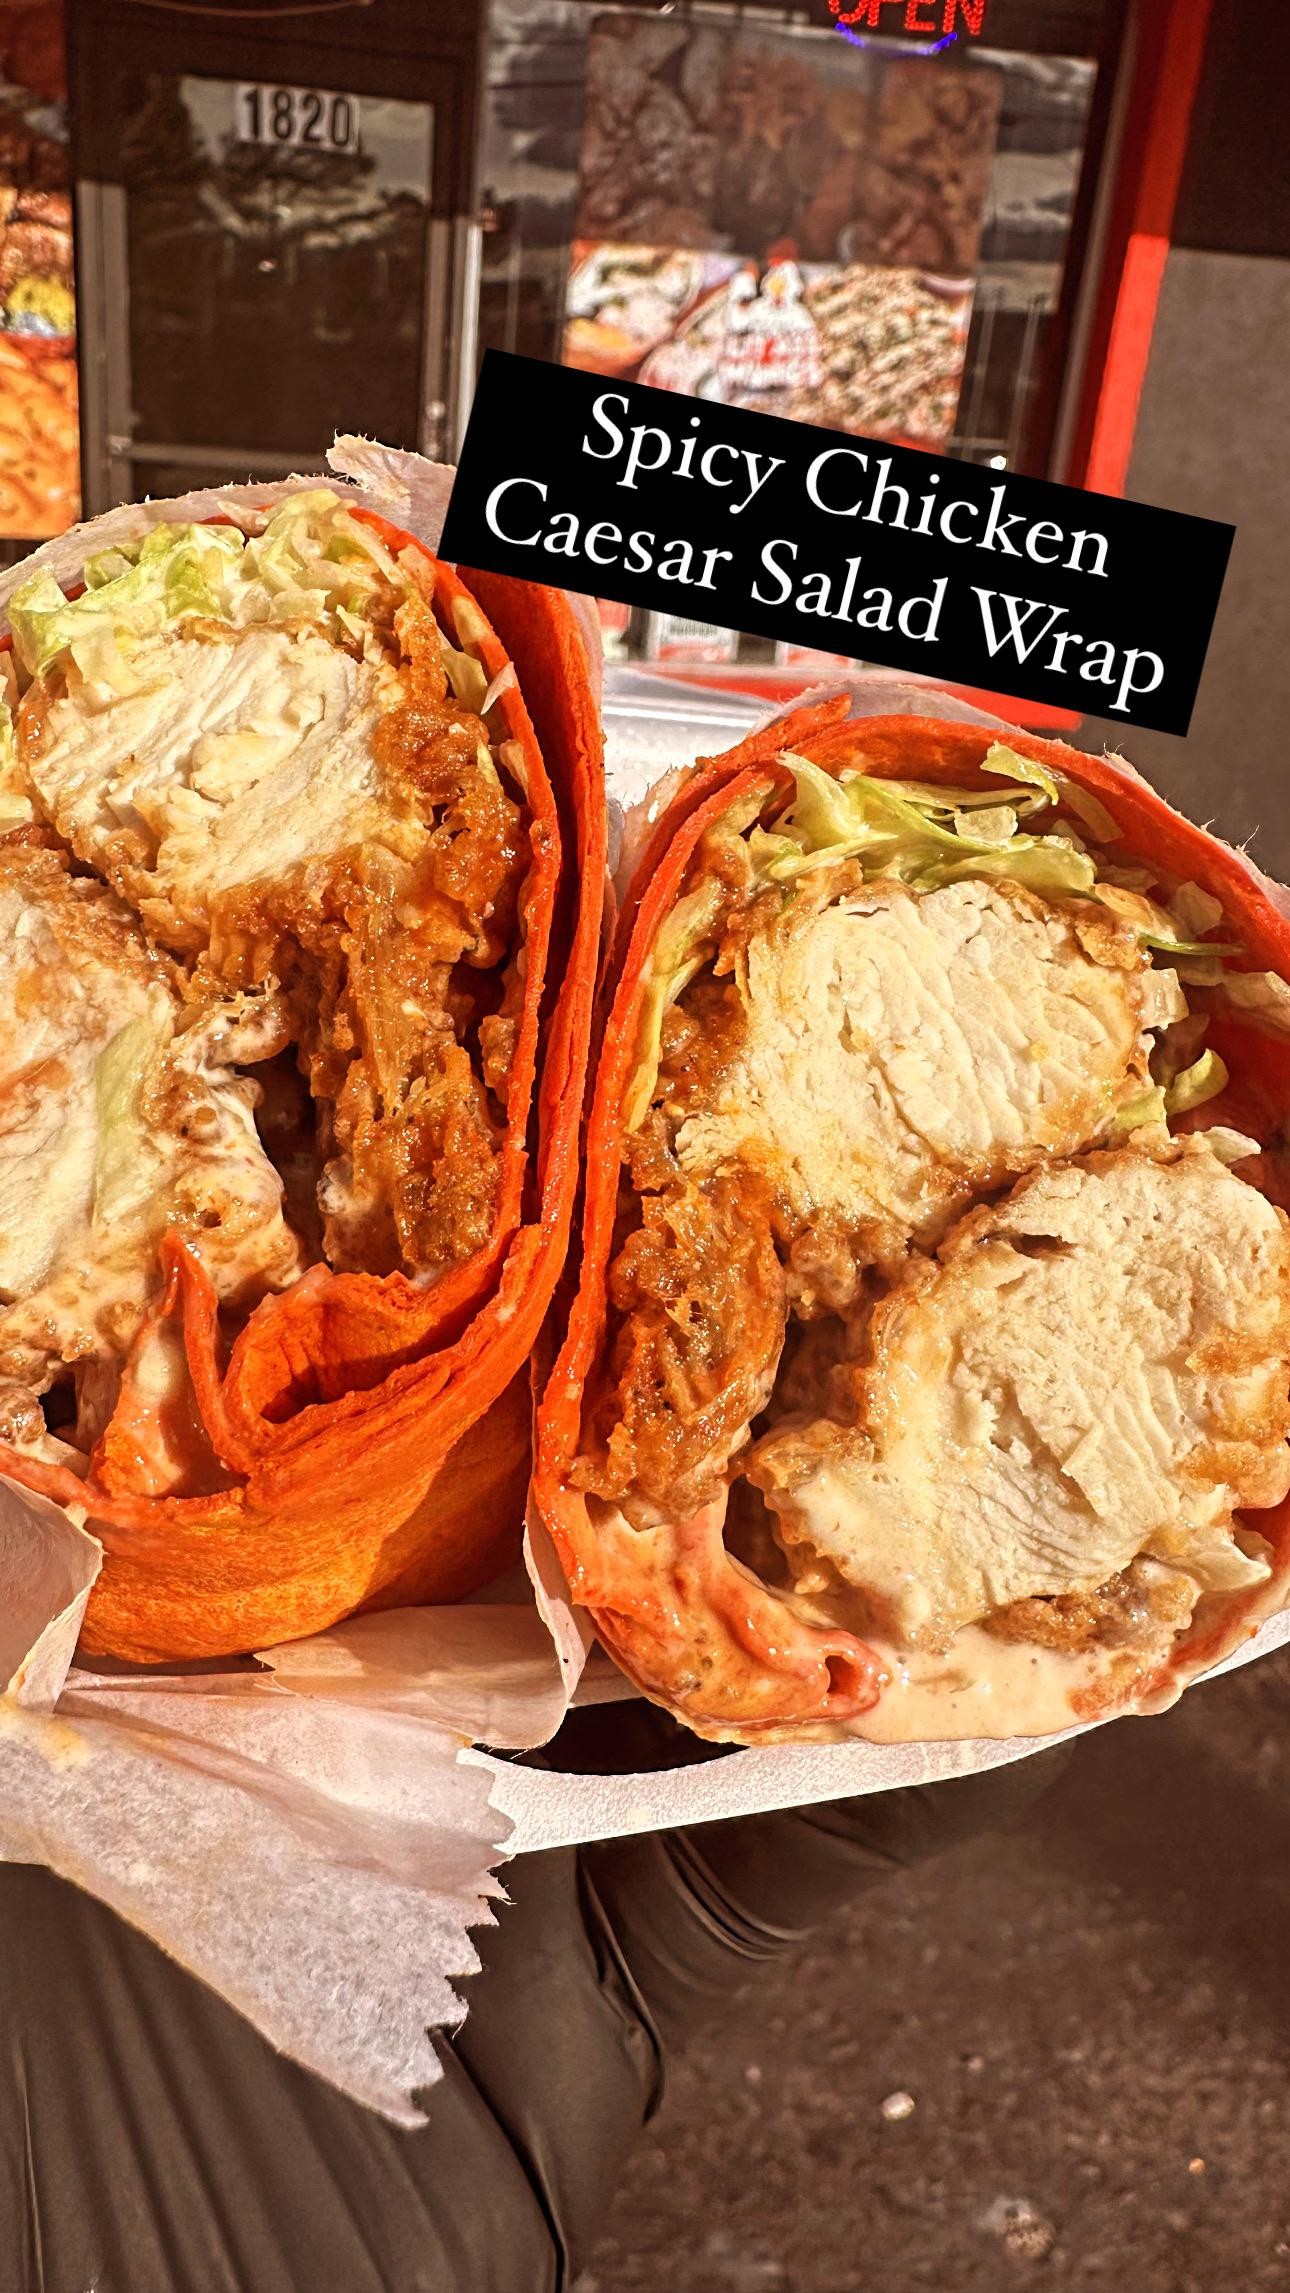 Spicy Chicken Ceasar Salad Wrap